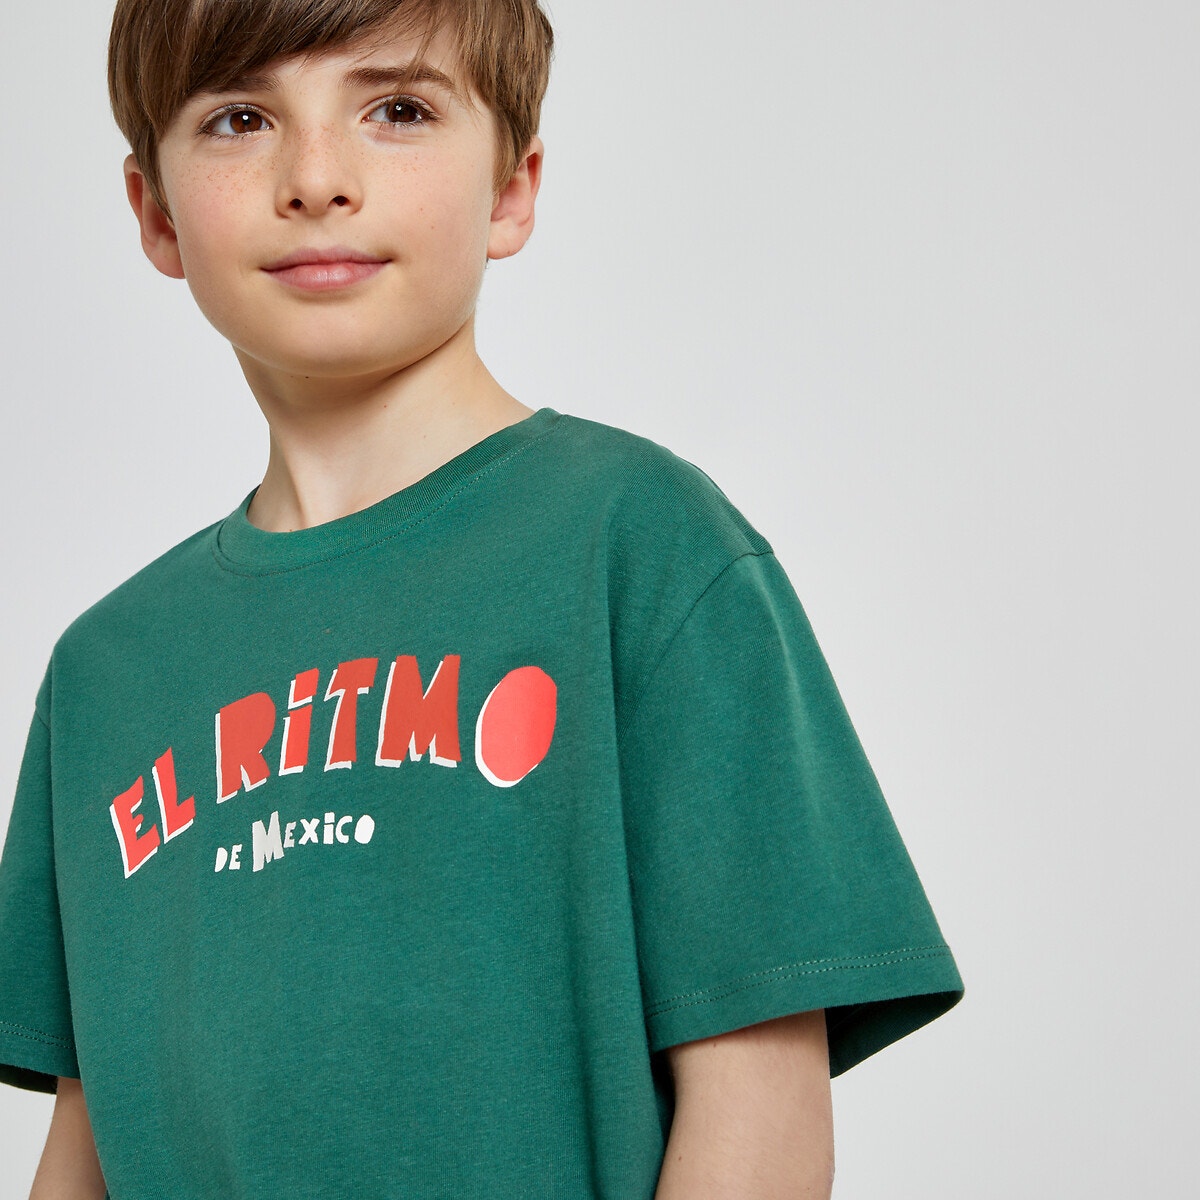 Μόδα > Παιδικά > Αγόρι > T-shirt, πόλο > Κοντά μανίκια Σετ 4 κοντομάνικα Τ-shirt